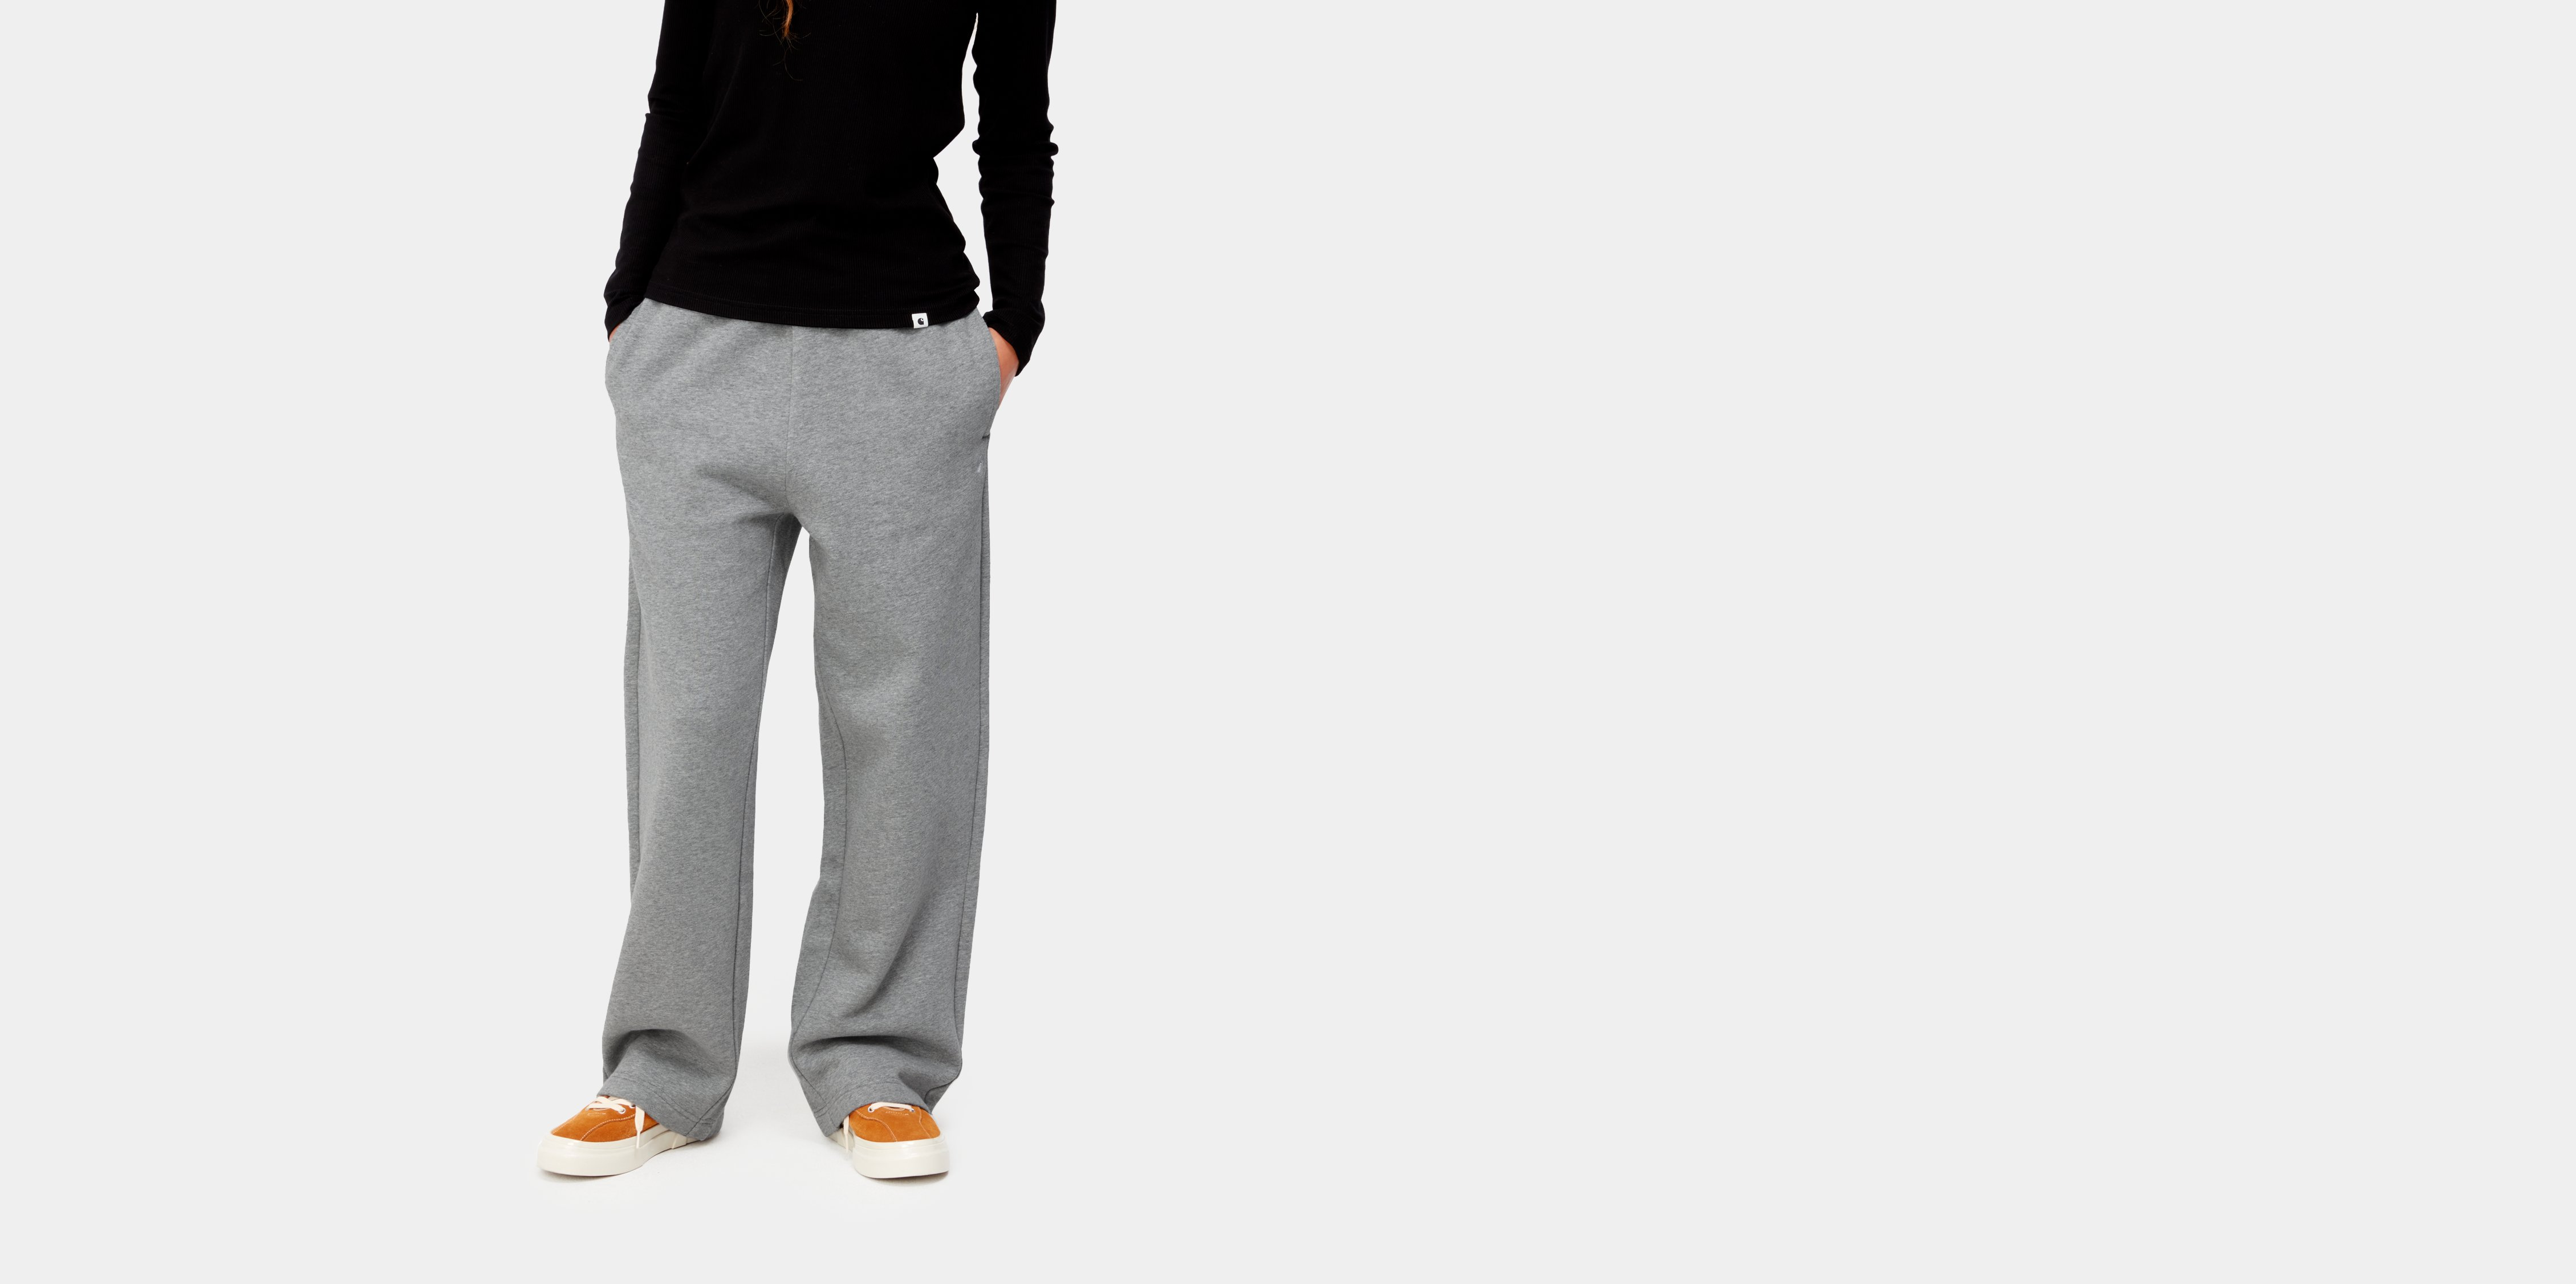 Pantalon de survêtement femme  Essentials - Tailles S/M/L/XL/XXL –